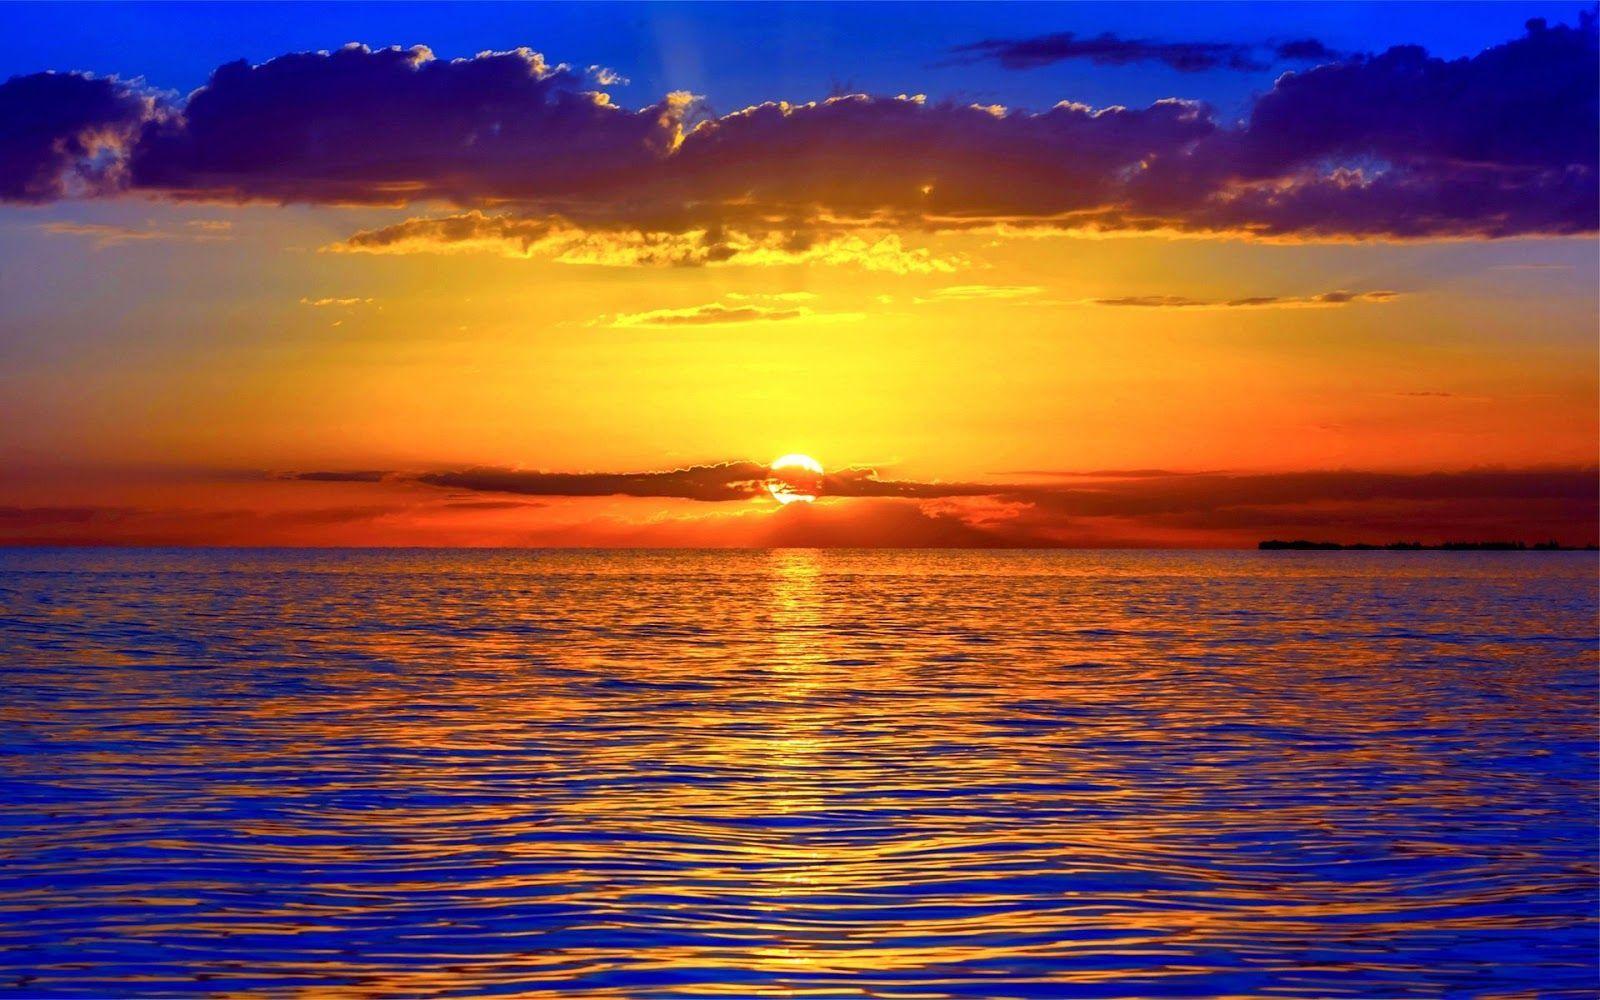 Blue Ocean Sunset Wallpapers Top Free Blue Ocean Sunset Backgrounds Wallpaperaccess